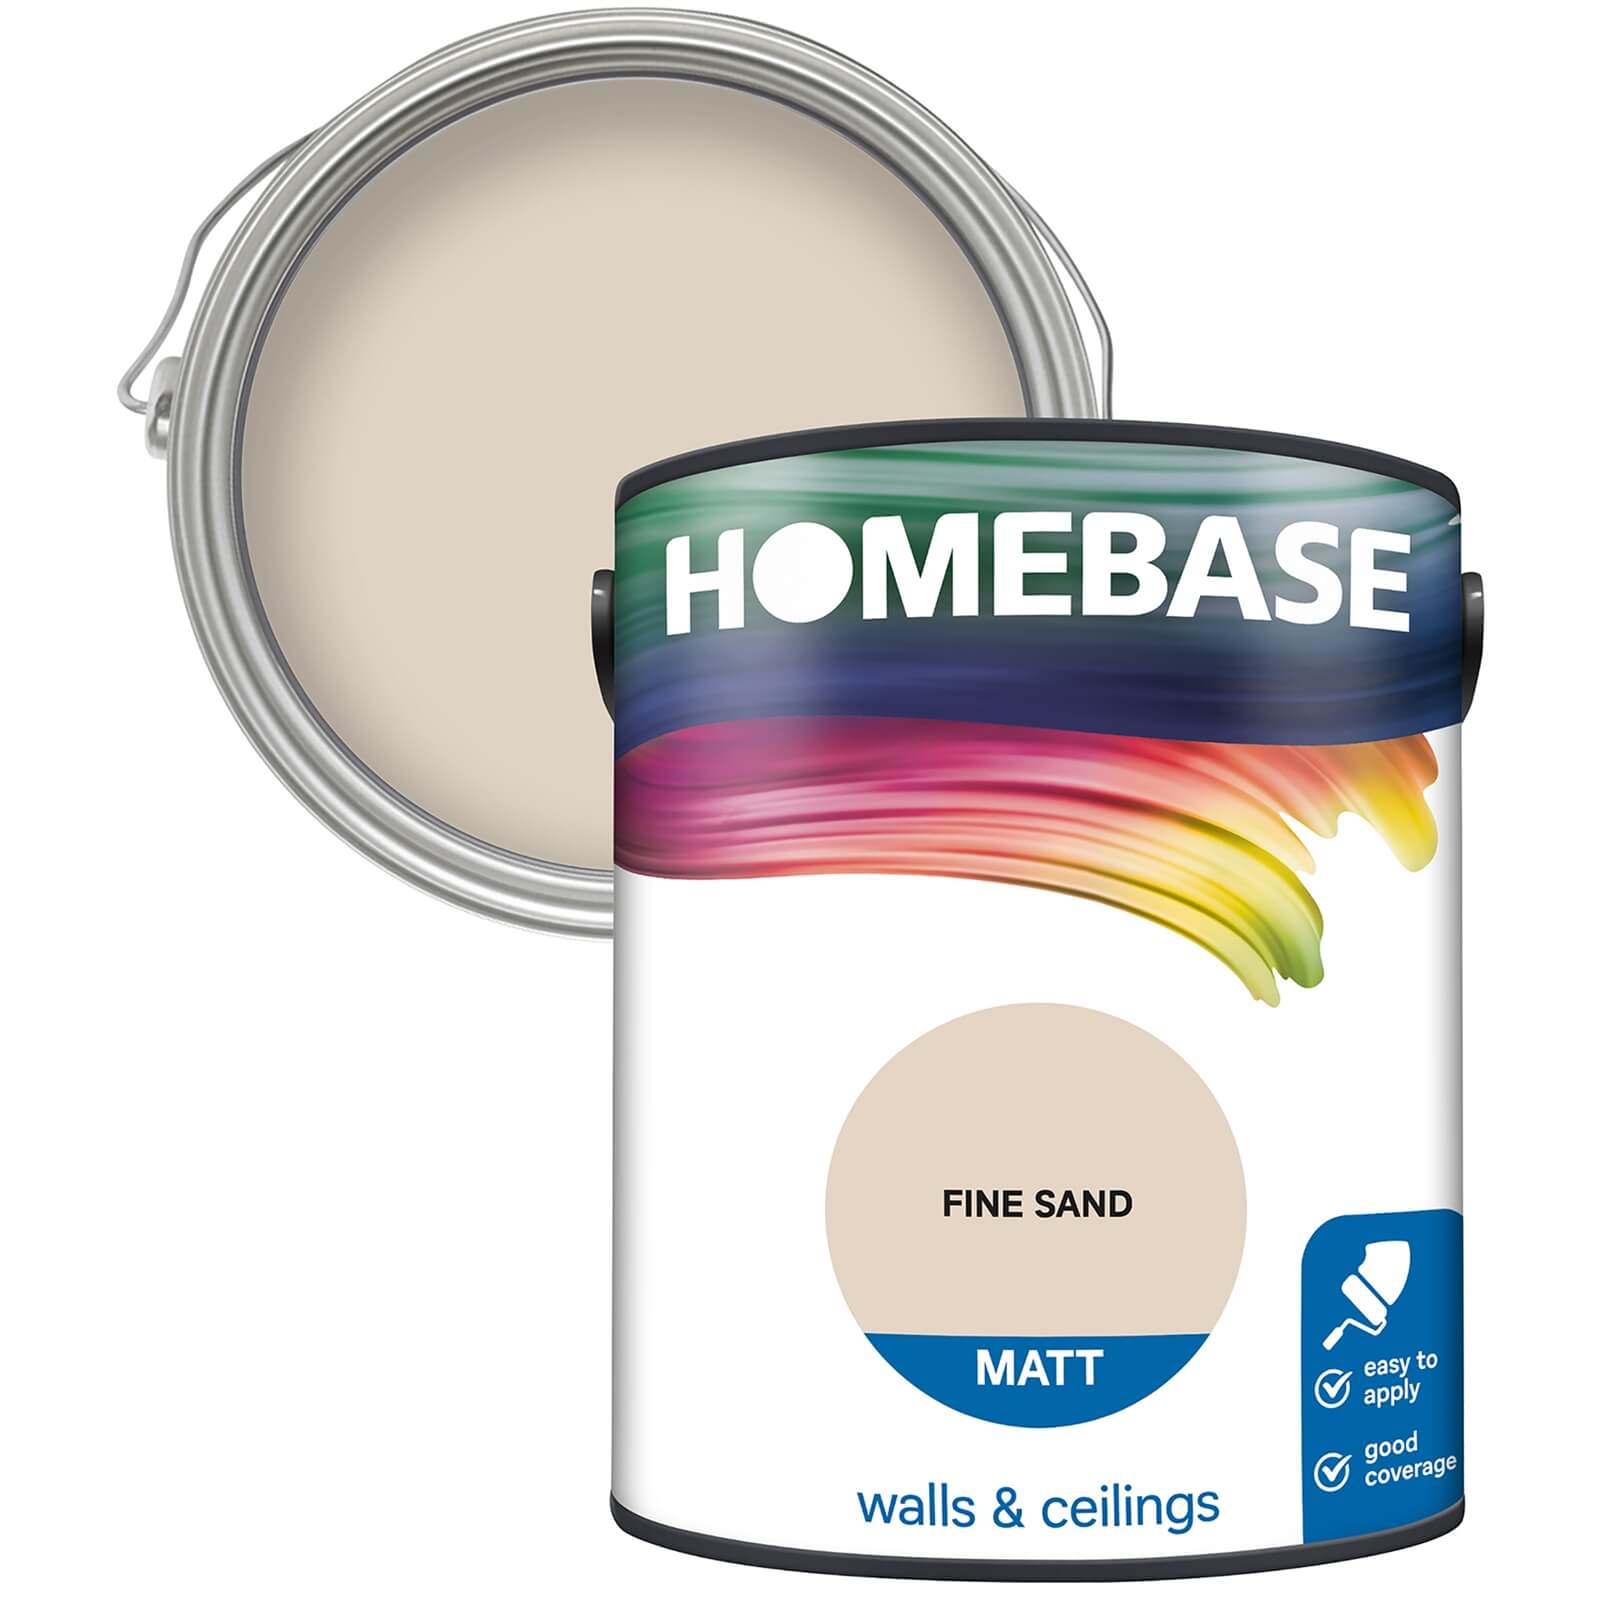 Homebase Matt Emulsion Paint Fine Sand - 5L